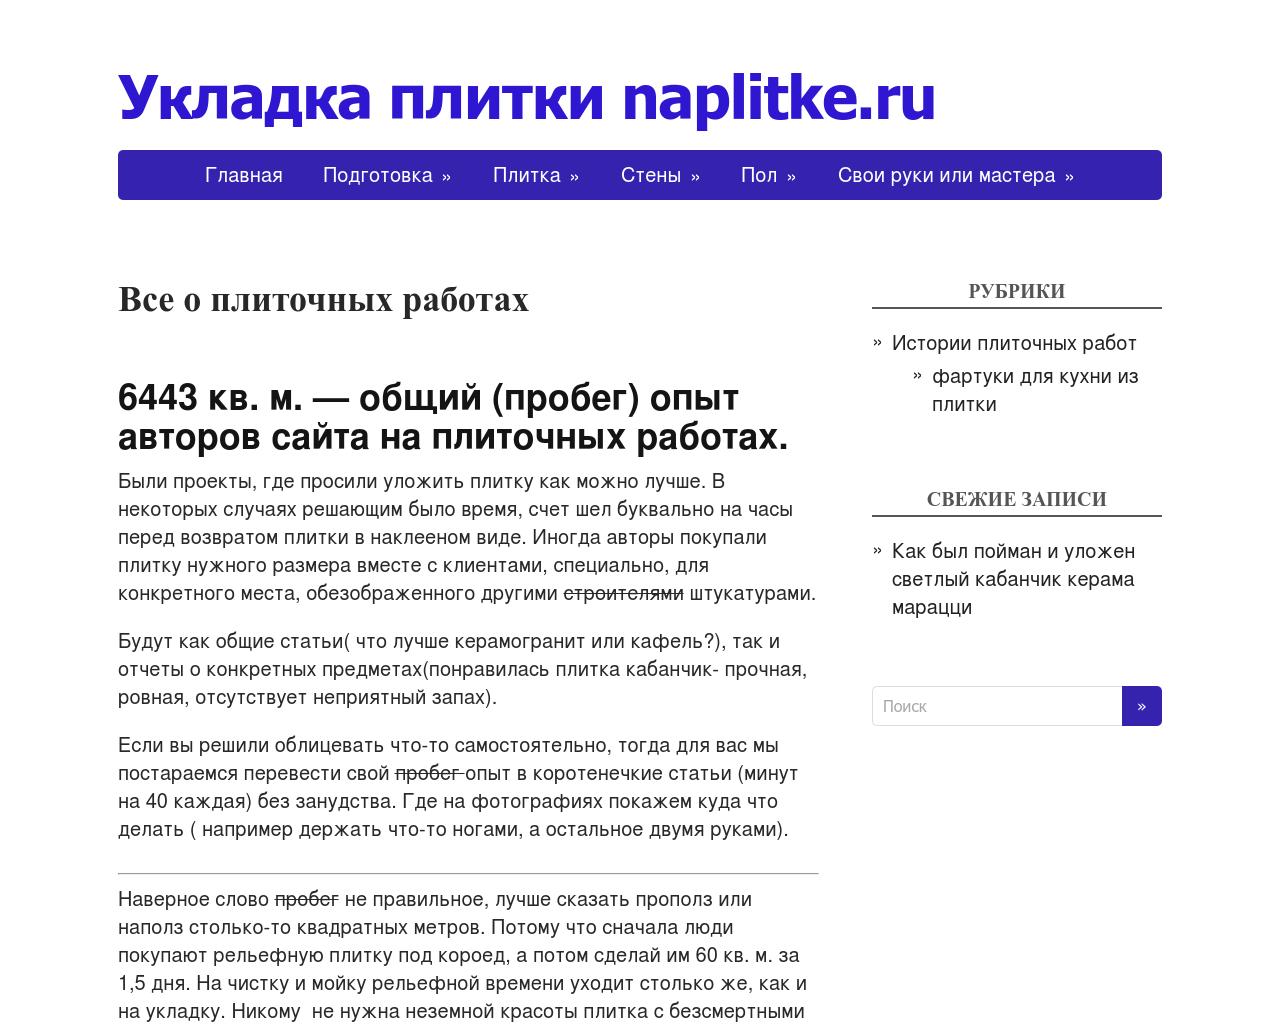 Изображение сайта naplitke.ru в разрешении 1280x1024